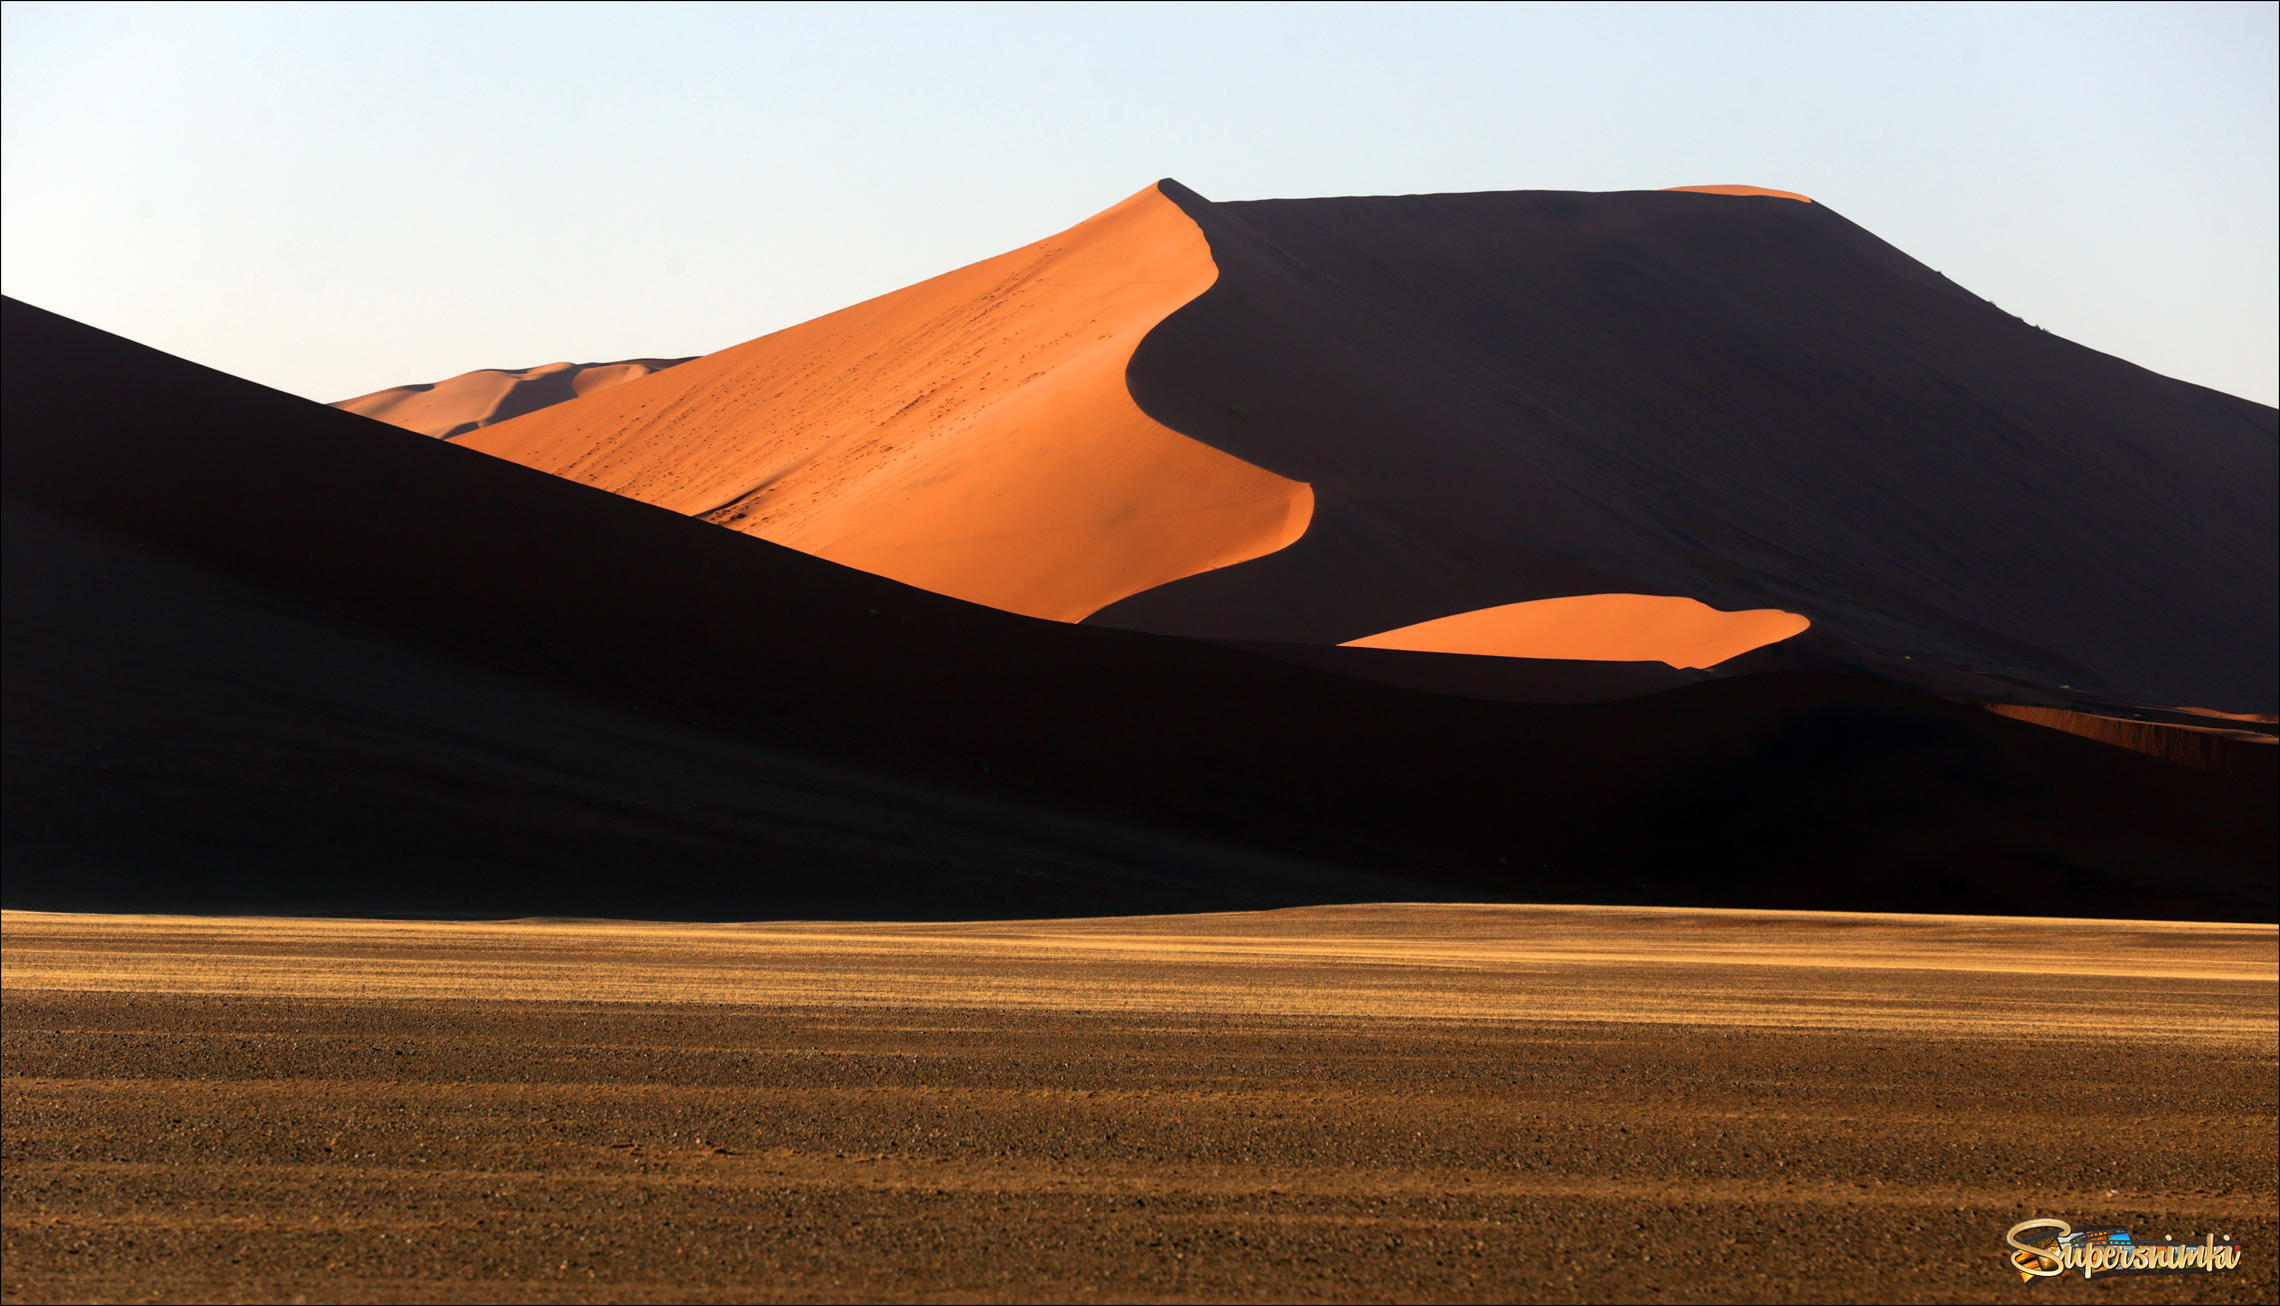 Дюны пустыни Намиб при утреннем освещении